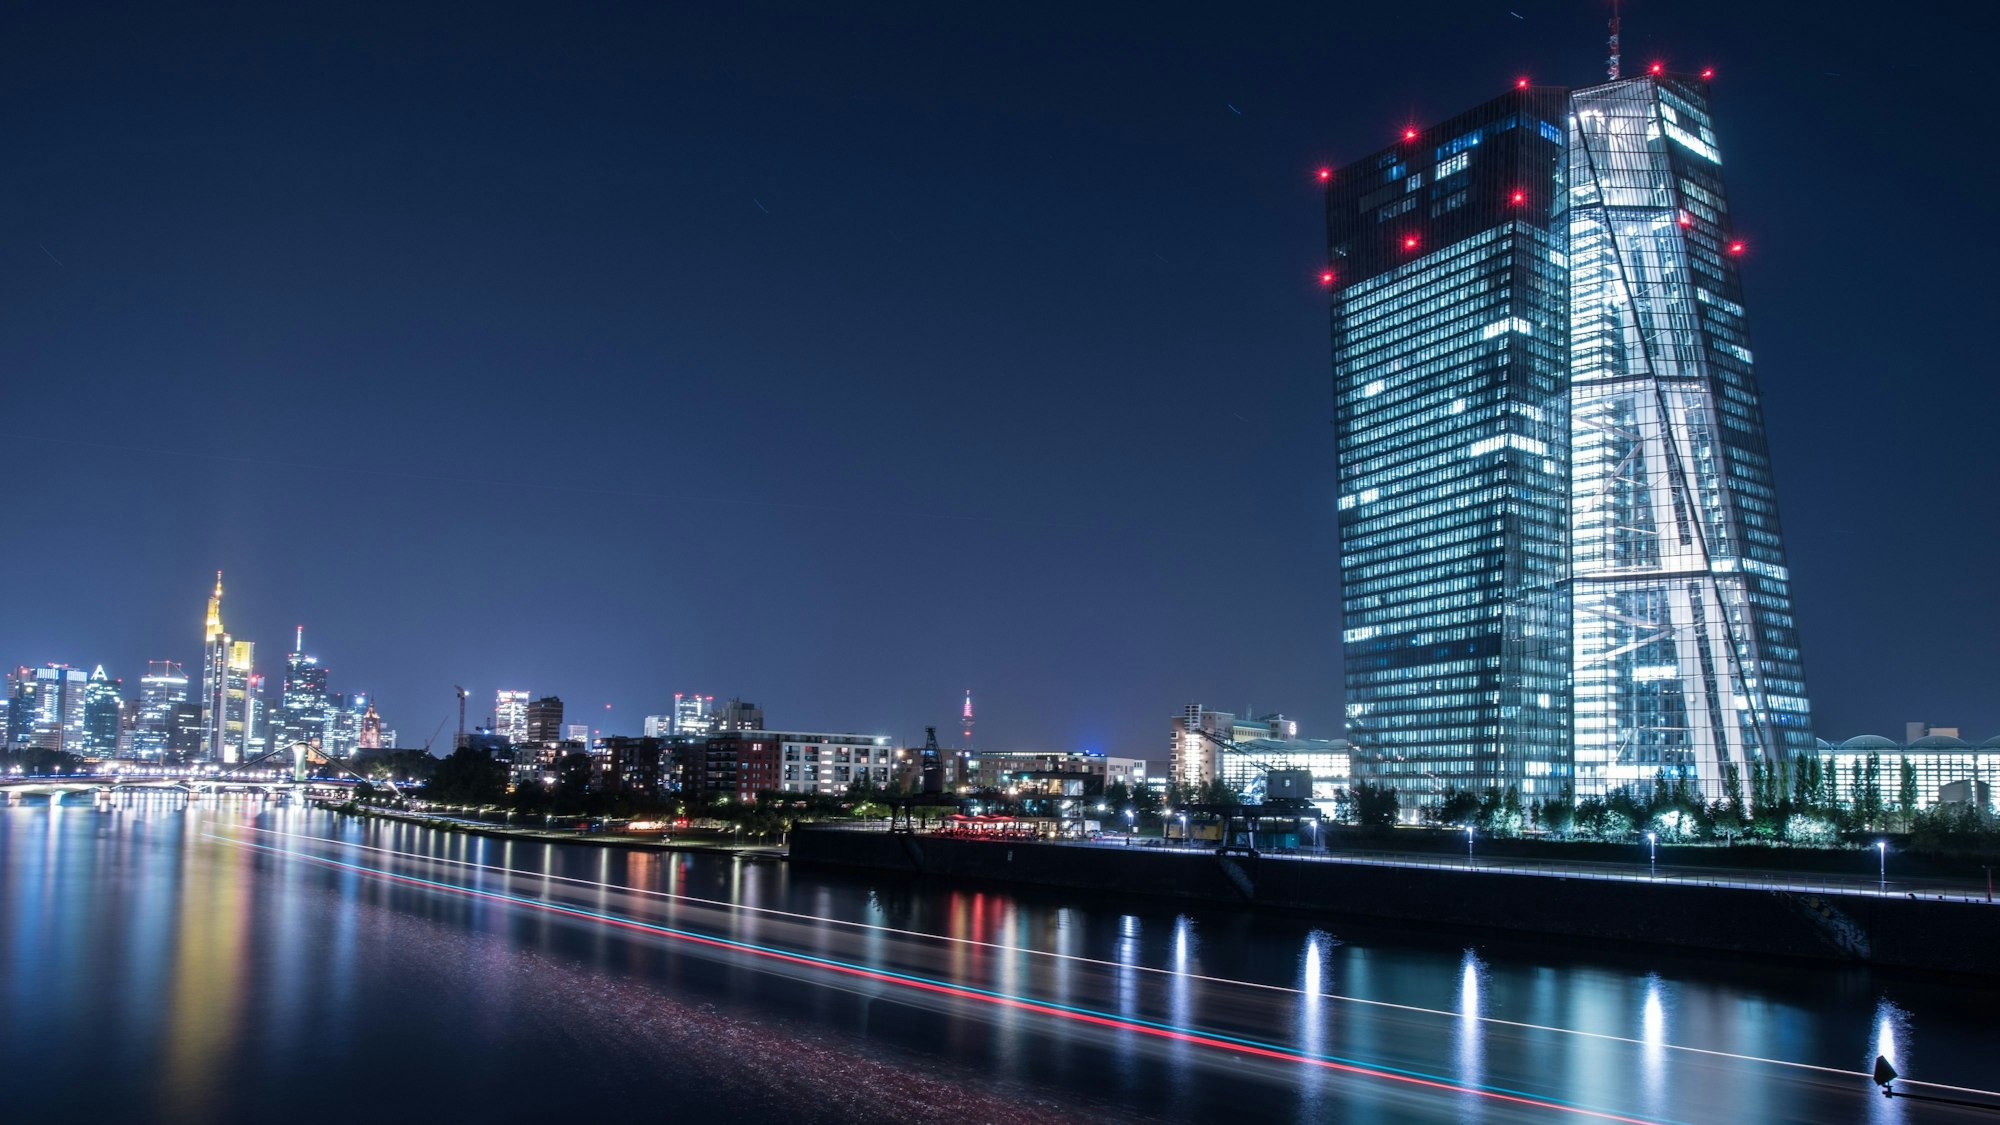 Die Lichter der Europäischen Zentralbank (EZB) leuchten am in Frankfurt am Main, während ein auf dem Main vorbeifahrendes Schiff Lichtspuren durch die Aufnahme zieh